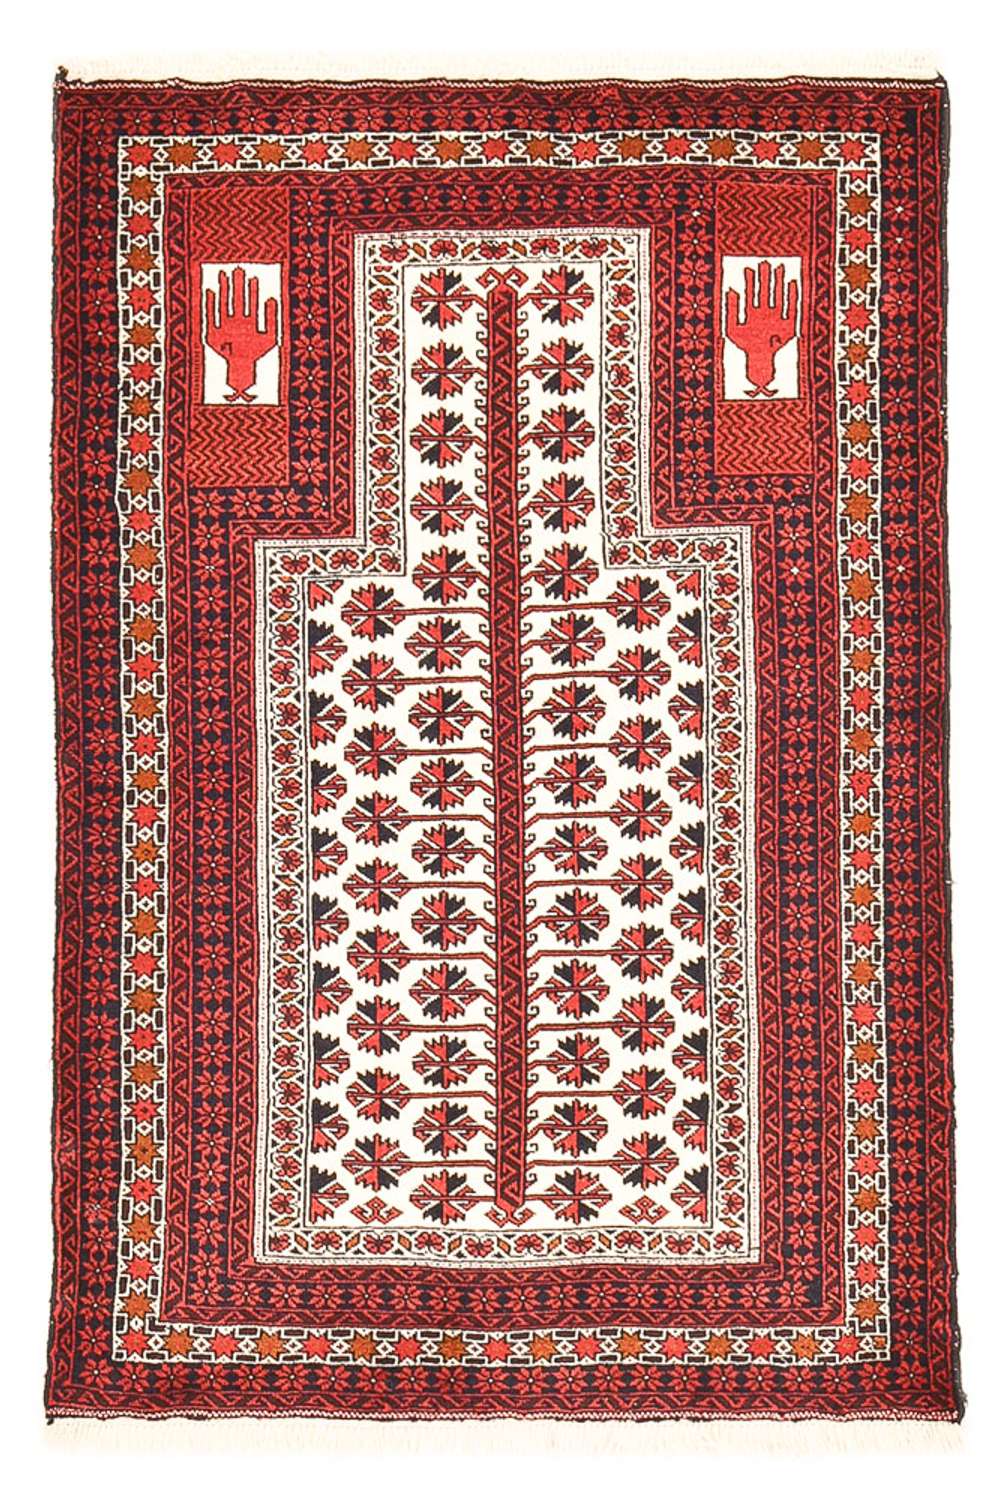 Tapis Belutsch - 143 x 99 cm - multicolore